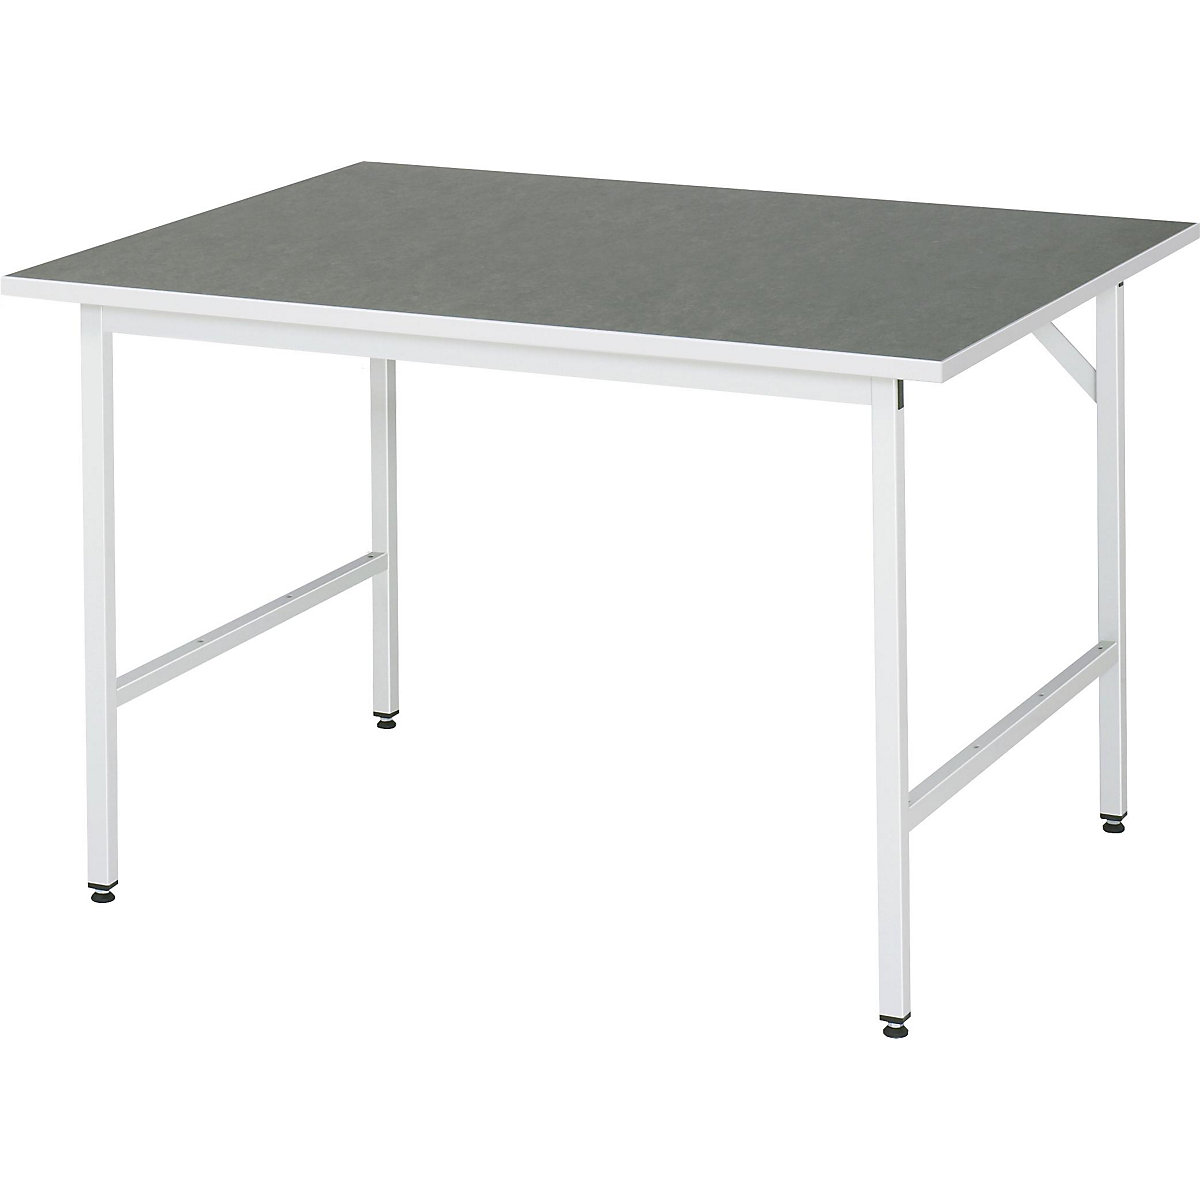 Munkaasztal, állítható magasságú – RAU, 800 – 850 mm, linóleum lap, szé x mé 1250 x 1000 mm, világosszürke-14